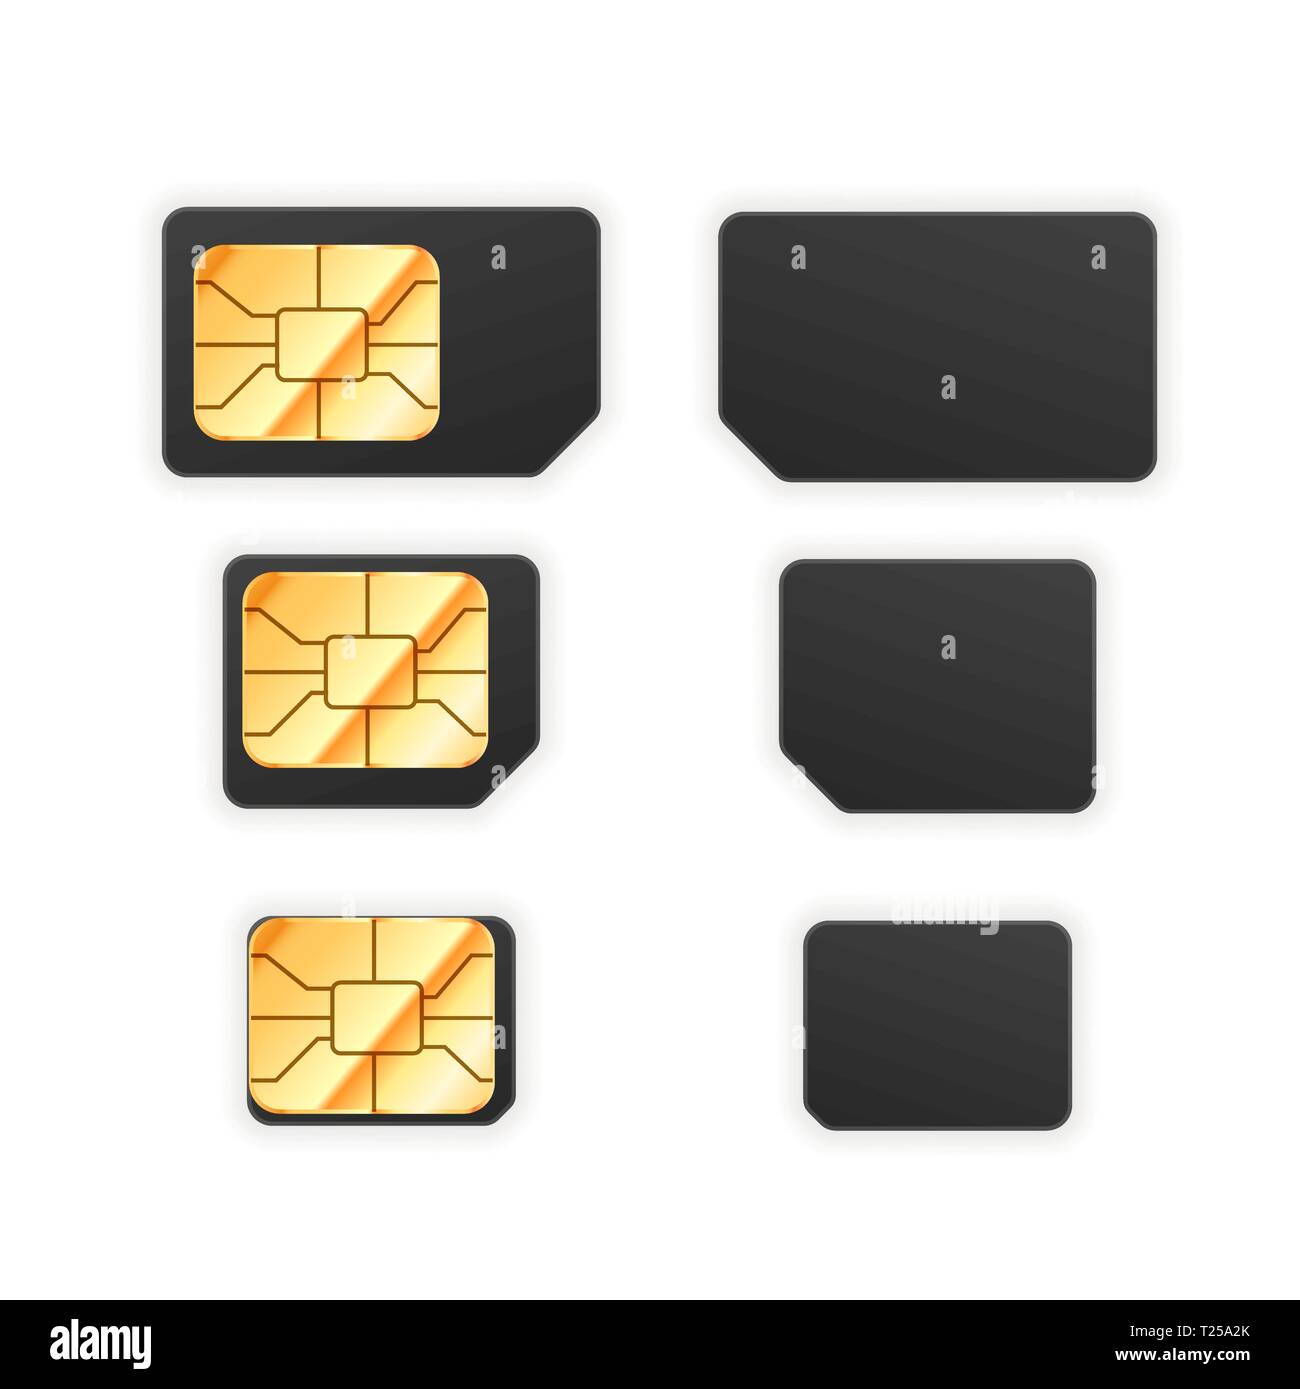 Serie di standard nero, micro e nano sim card per telefono con golden chip  lucida da entrambi i lati isolato su bianco Immagine e Vettoriale - Alamy